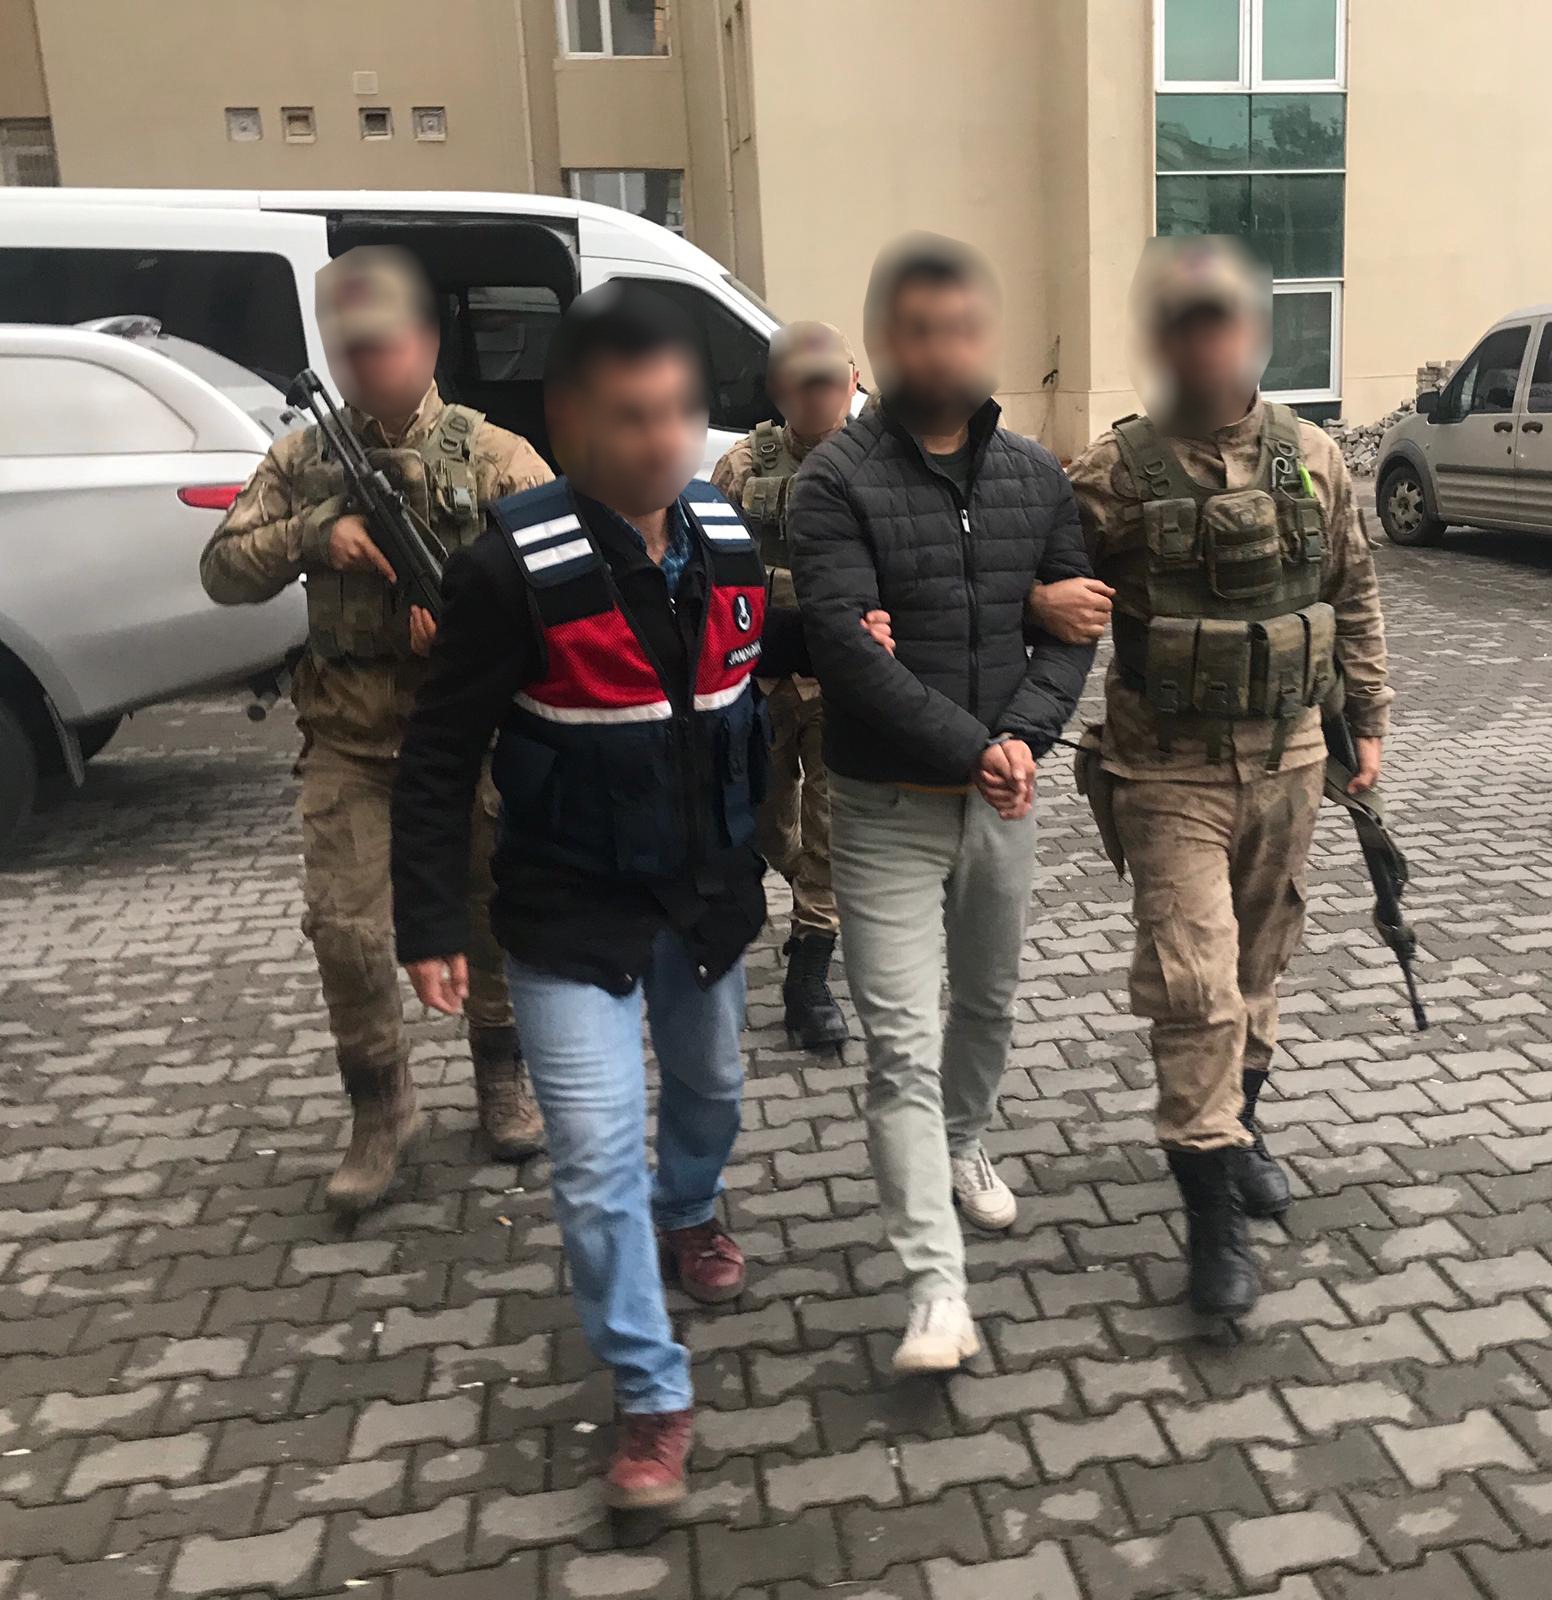 Diyarbakır'da Terör Operasyonu: 1 Terörist Yakalandı